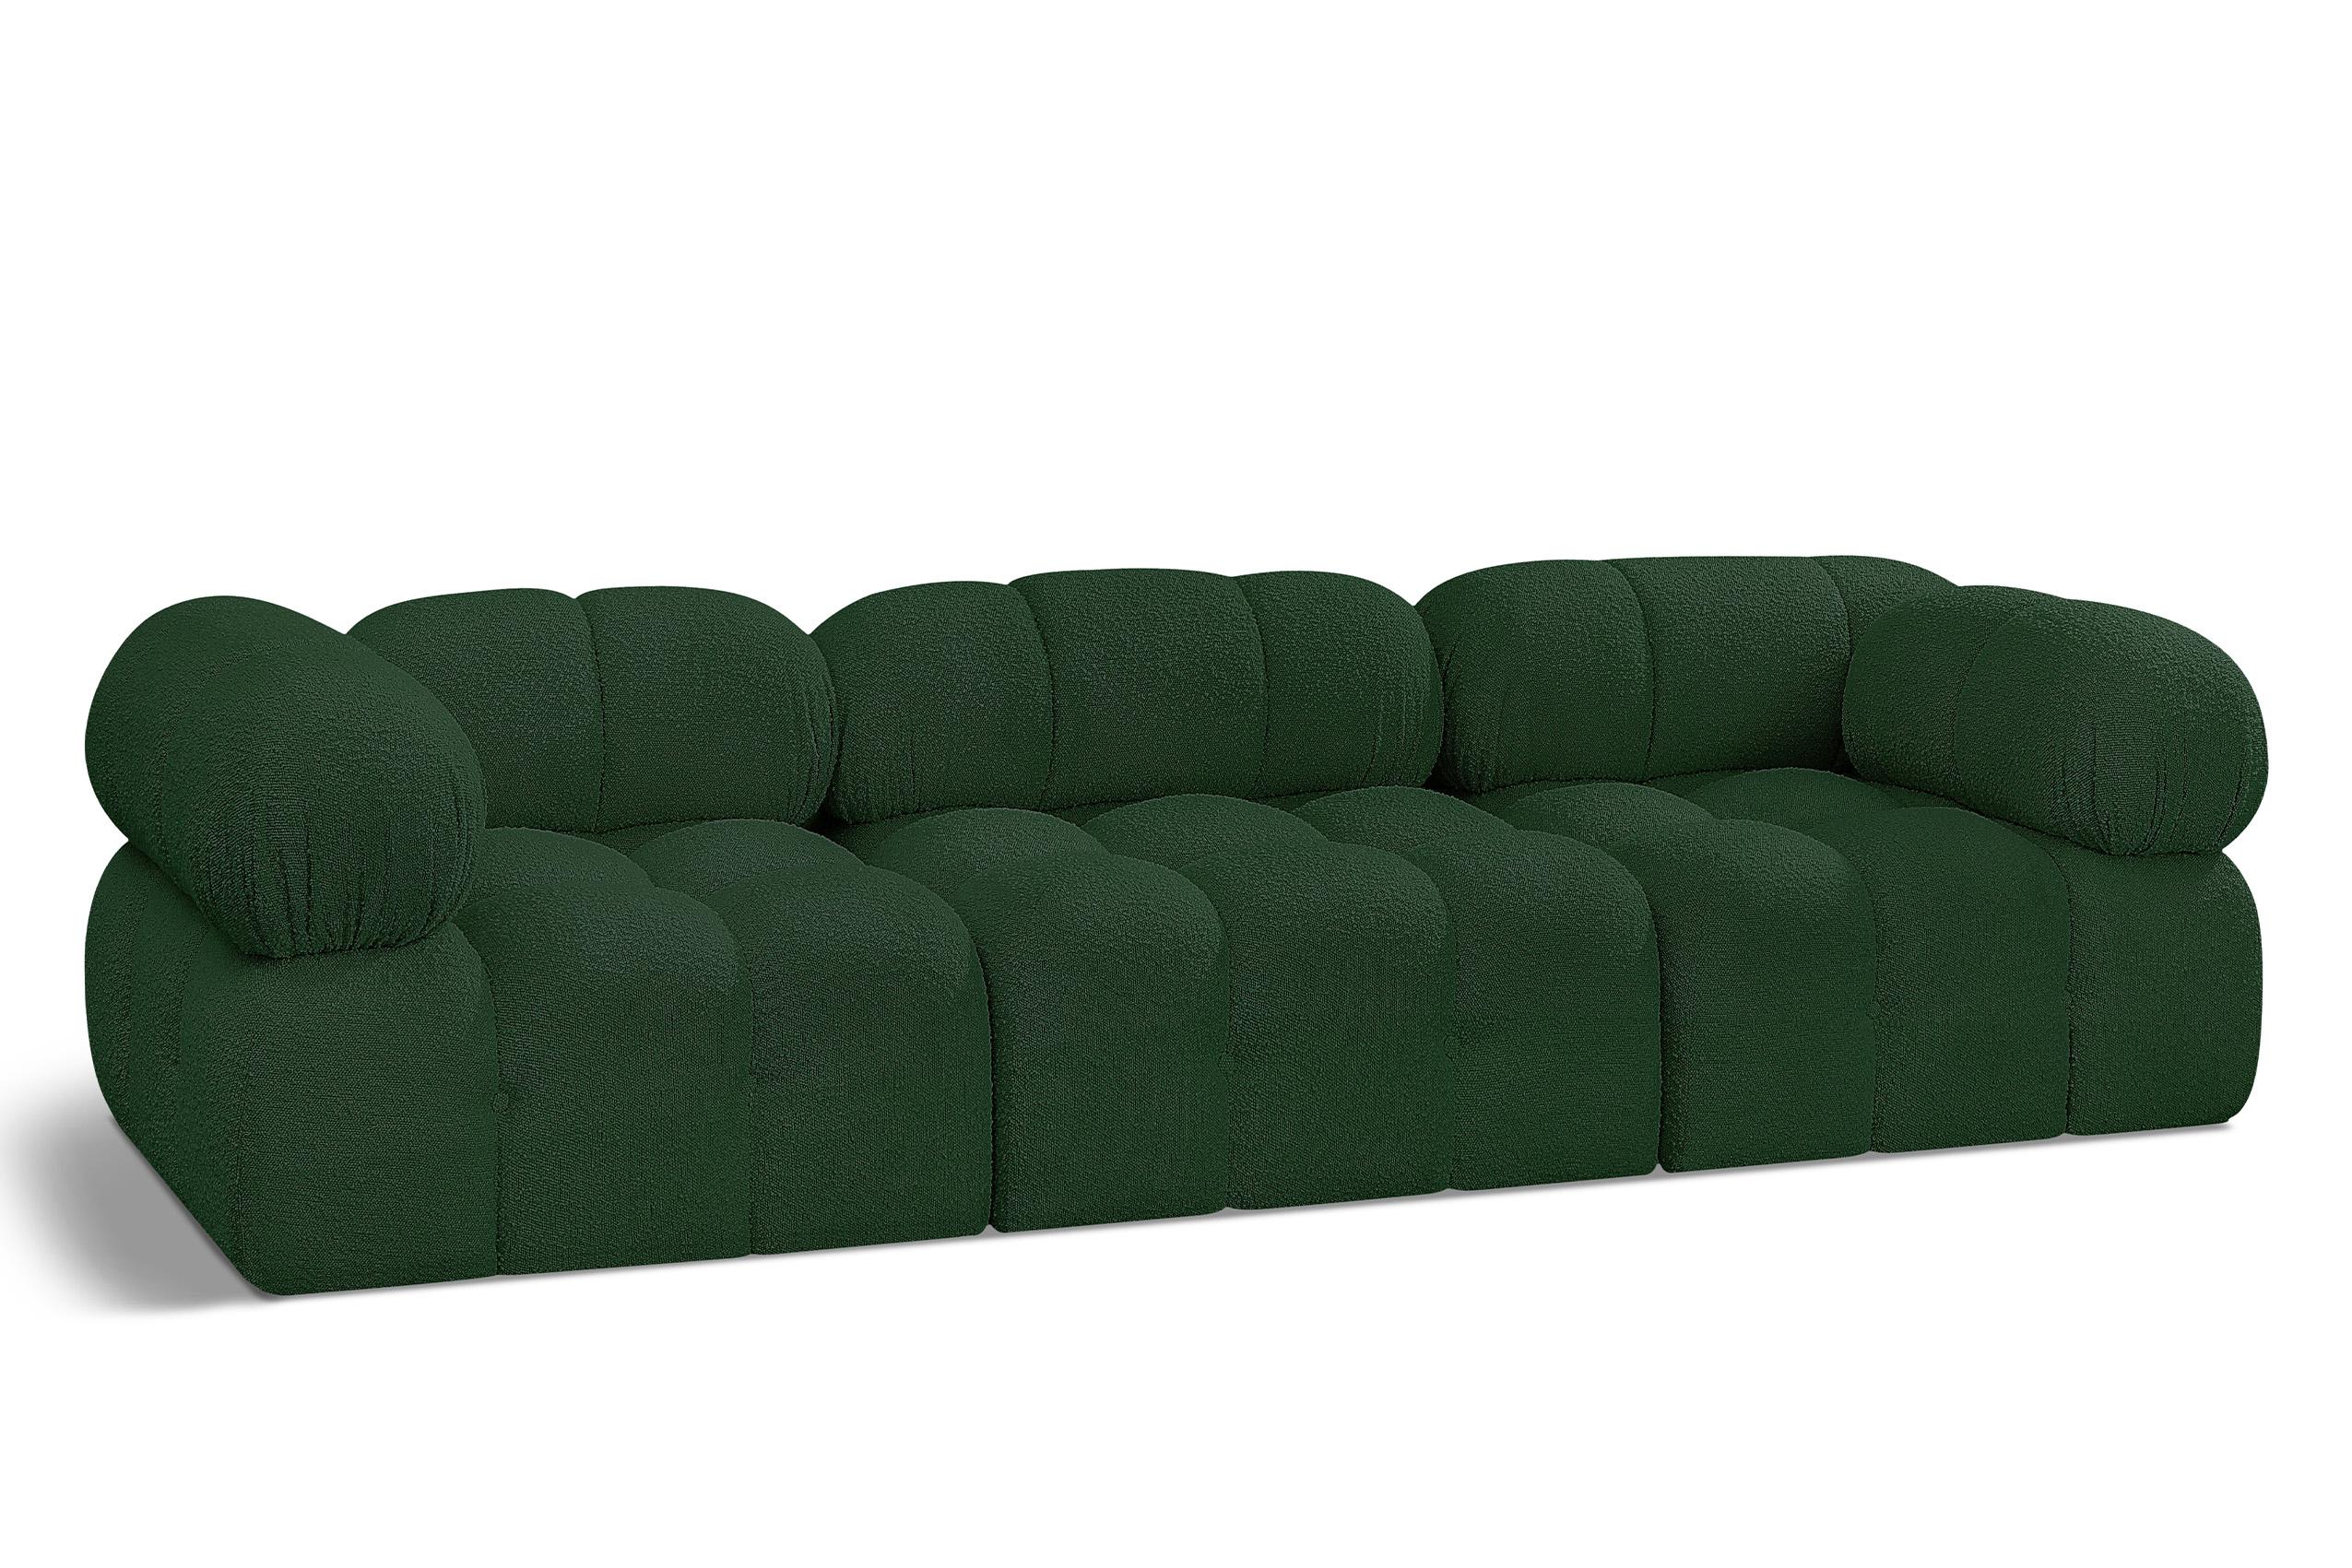 Contemporary, Modern Modular Sofa AMES 611Green-S102A 611Green-S102A in Green 